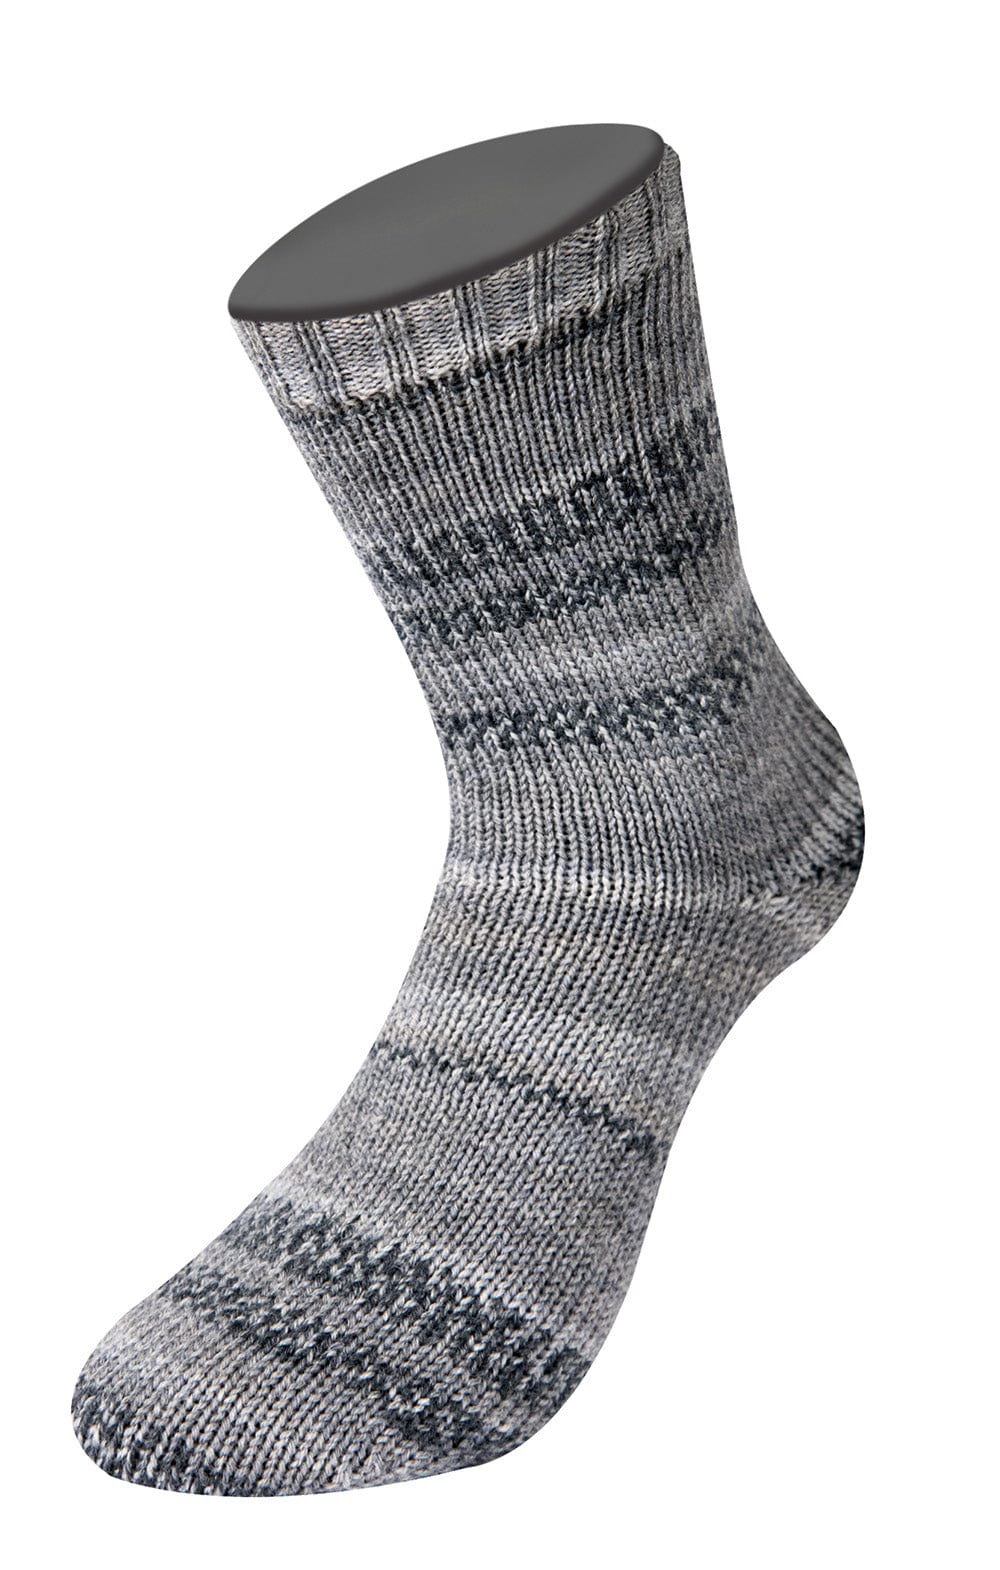 Socken 4-fach - MEILENWEIT 100 DENIM MIX - Strickset von LANA GROSSA jetzt online kaufen bei OONIQUE